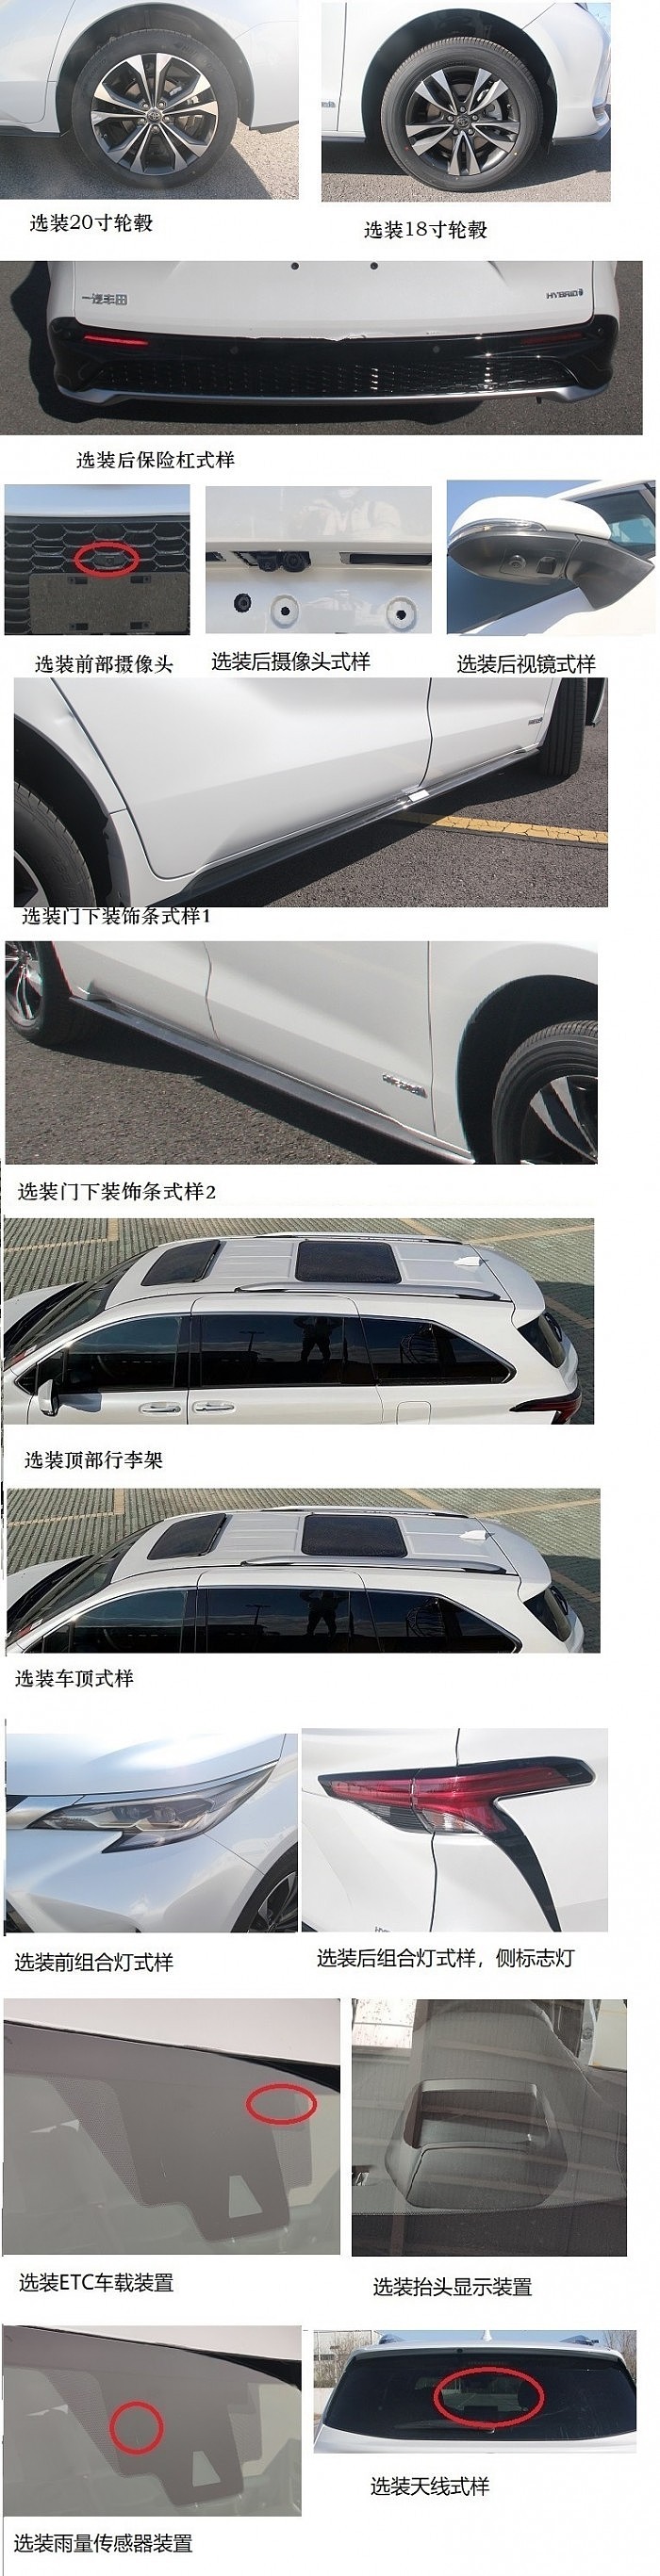 美版“塞纳”将国产 一汽丰田全新MPV亮相 - 2